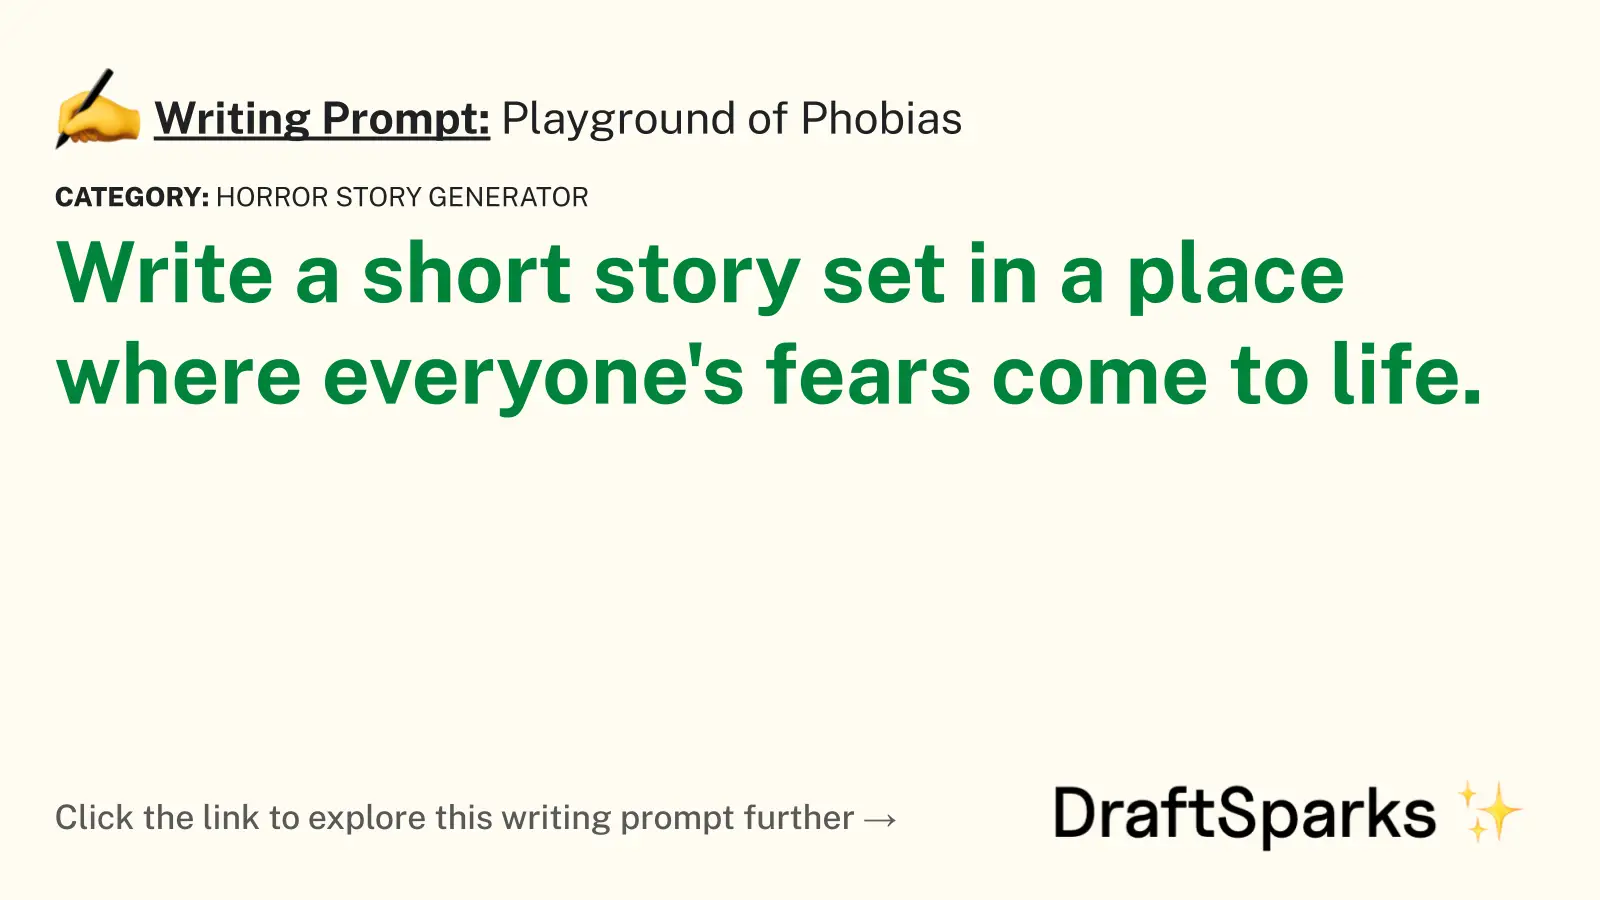 Playground of Phobias